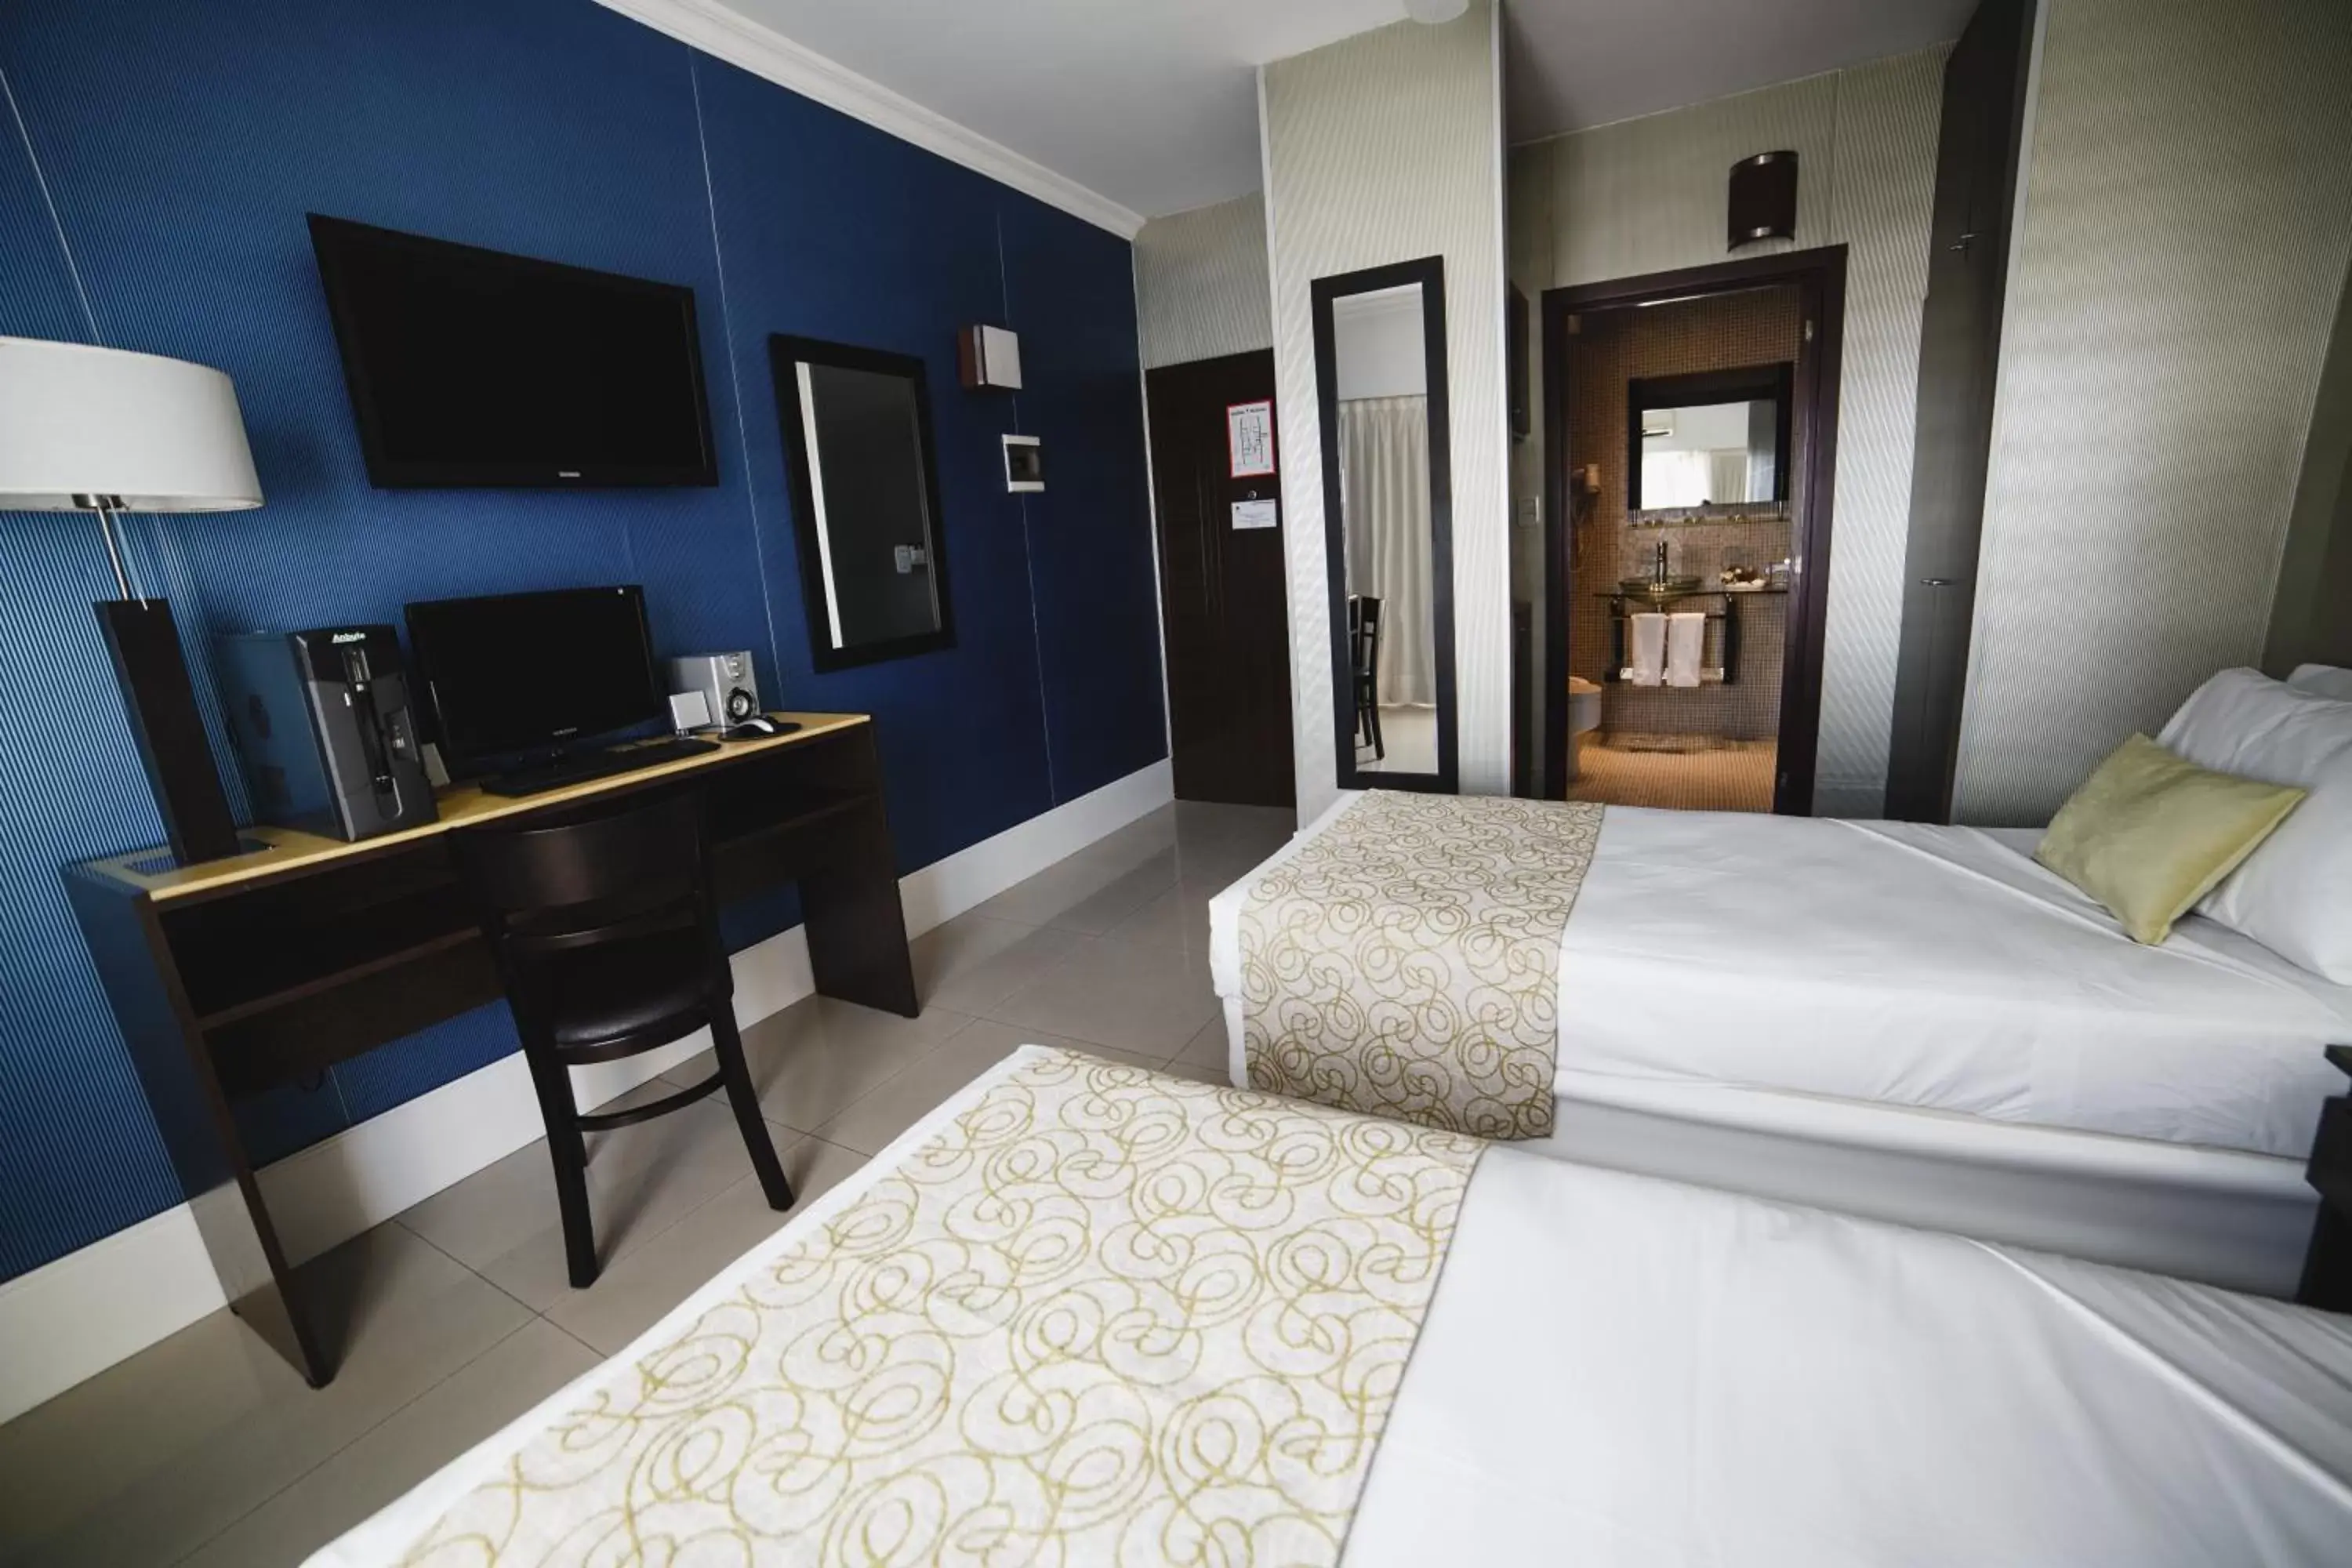 Bedroom, TV/Entertainment Center in Ker Urquiza Hotel